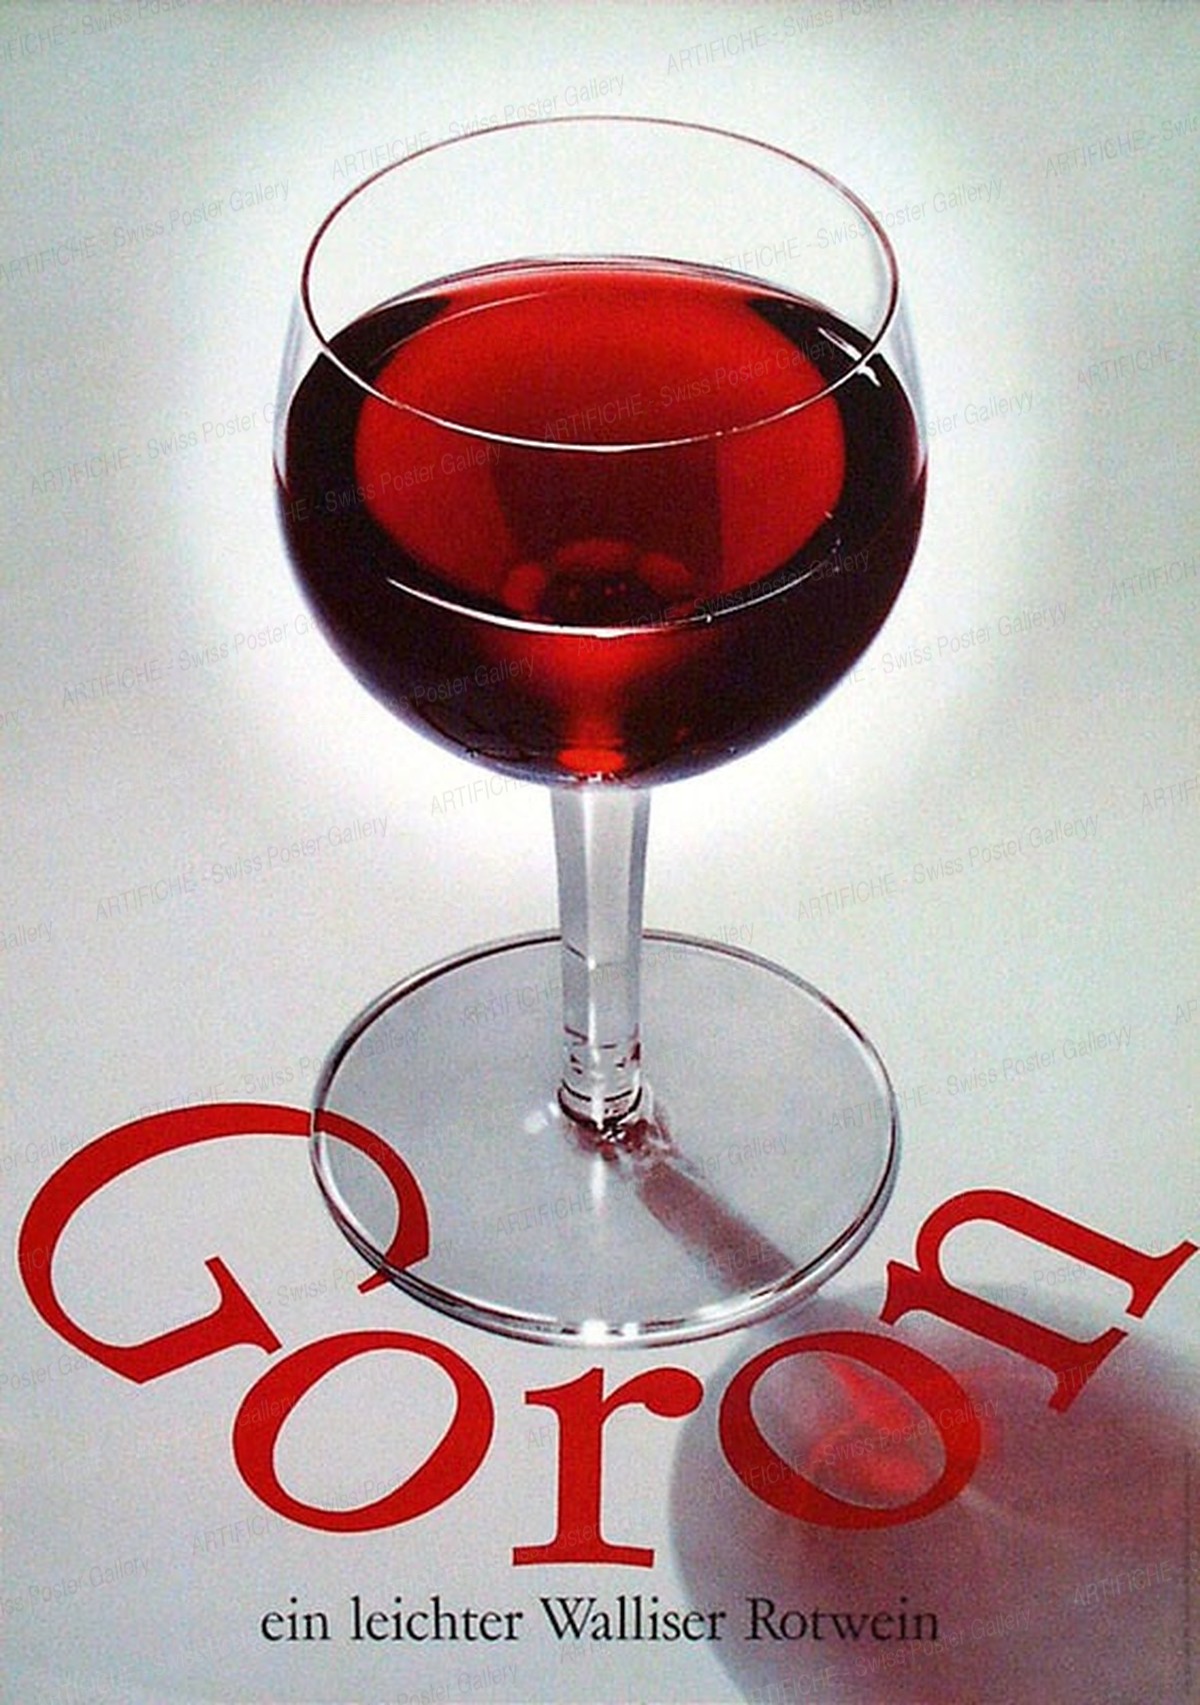 Goron – ein leichter Walliser Rotwein, Alfons Ruckstuhl